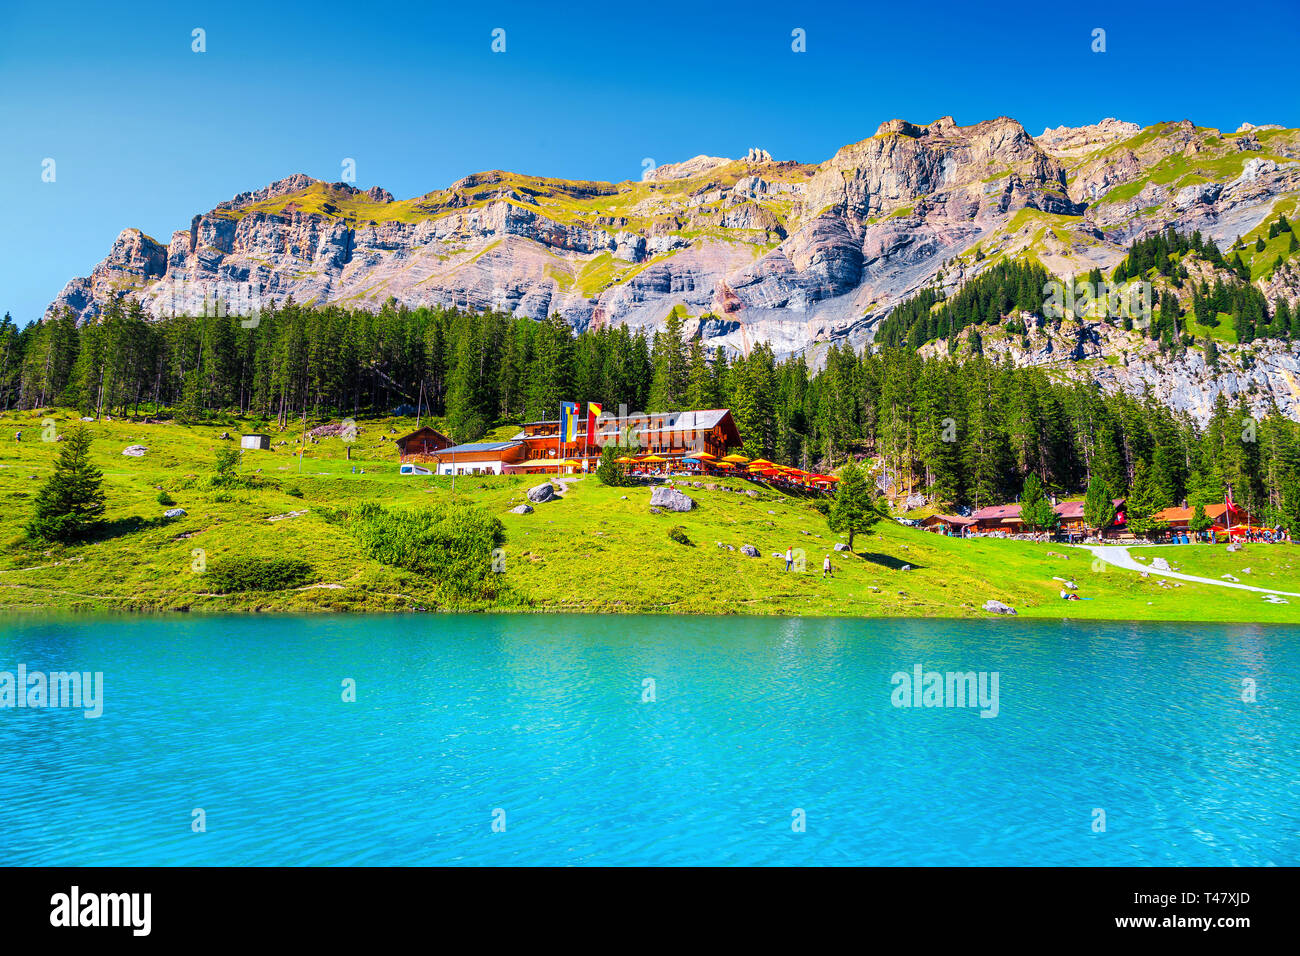 Famoso Viaggio e luogo turistico, splendido lago alpino e di alta montagna con la verde pineta, Oeschinensee lago, Oberland bernese, Svizzera Foto Stock